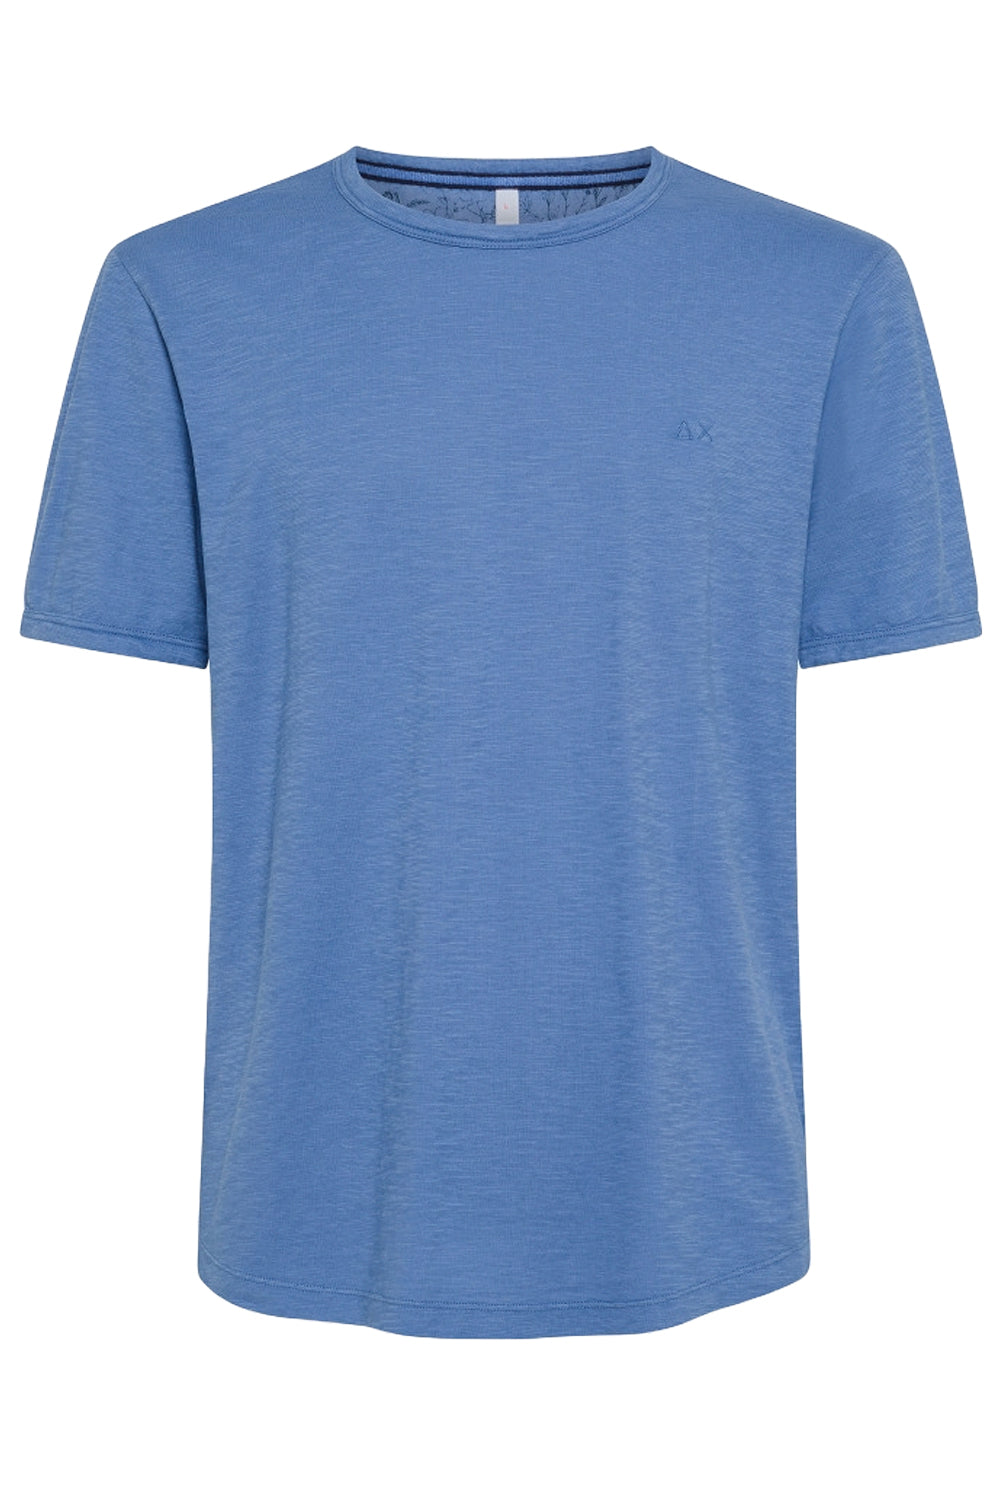 Image of SUN 68 T-shirt round bottom